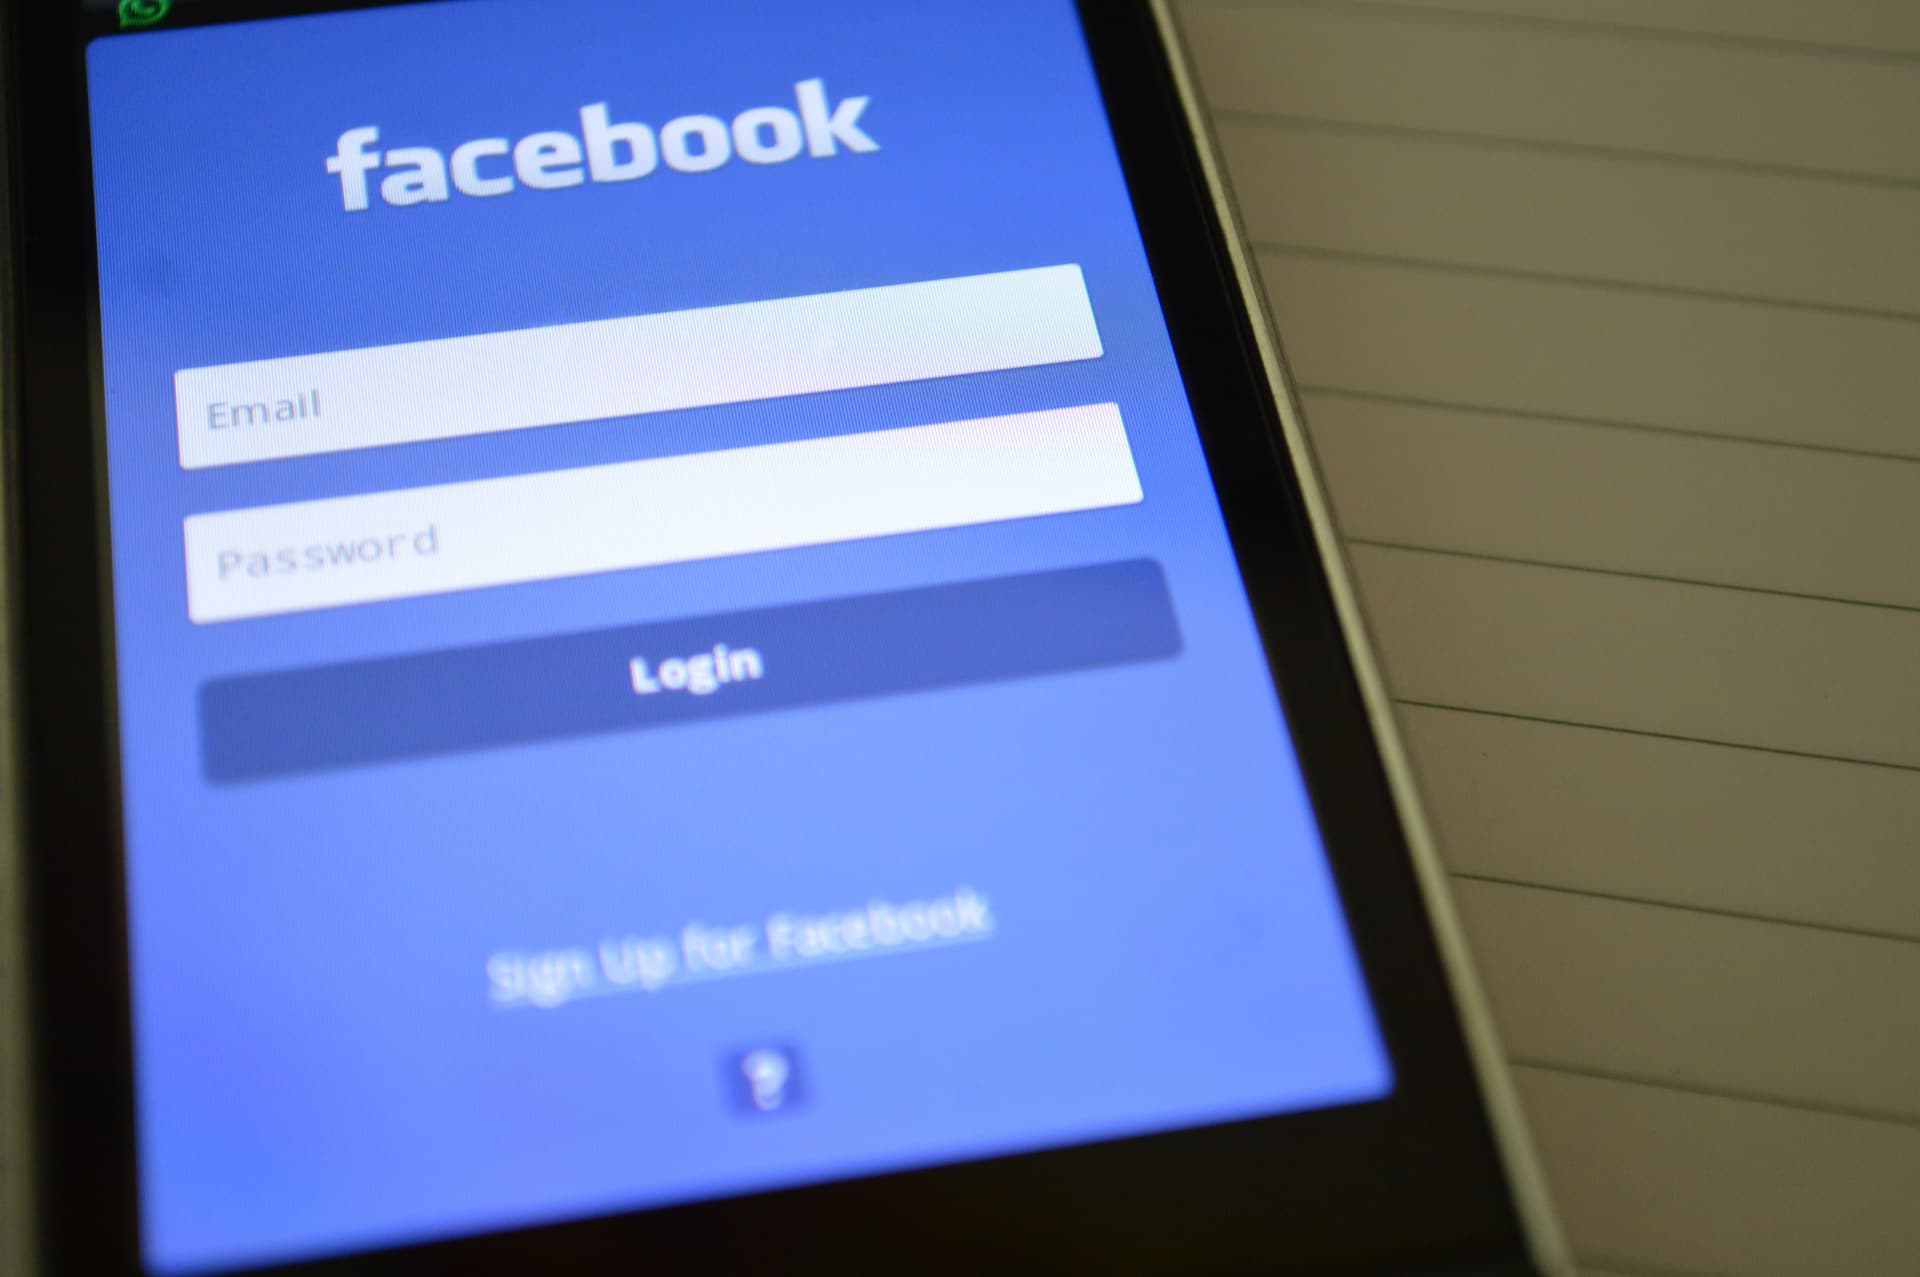 בין לייק לחסימה: עשרת הדיברות לדיון מוצלח בפייסבוק